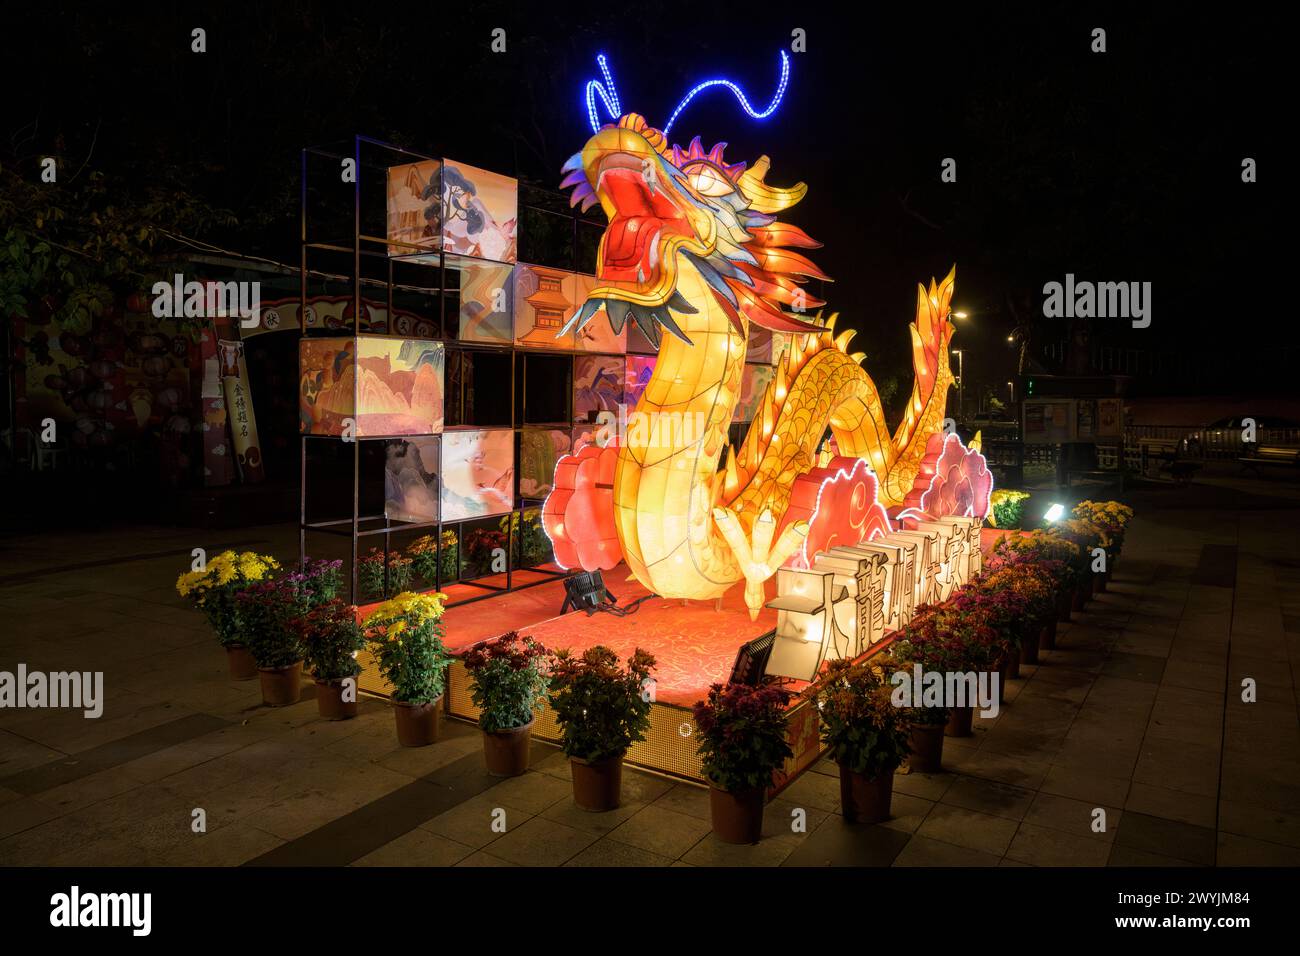 Lanterna a forma di drago luminosa durante un festival notturno, circondata da decorazioni più piccole Foto Stock